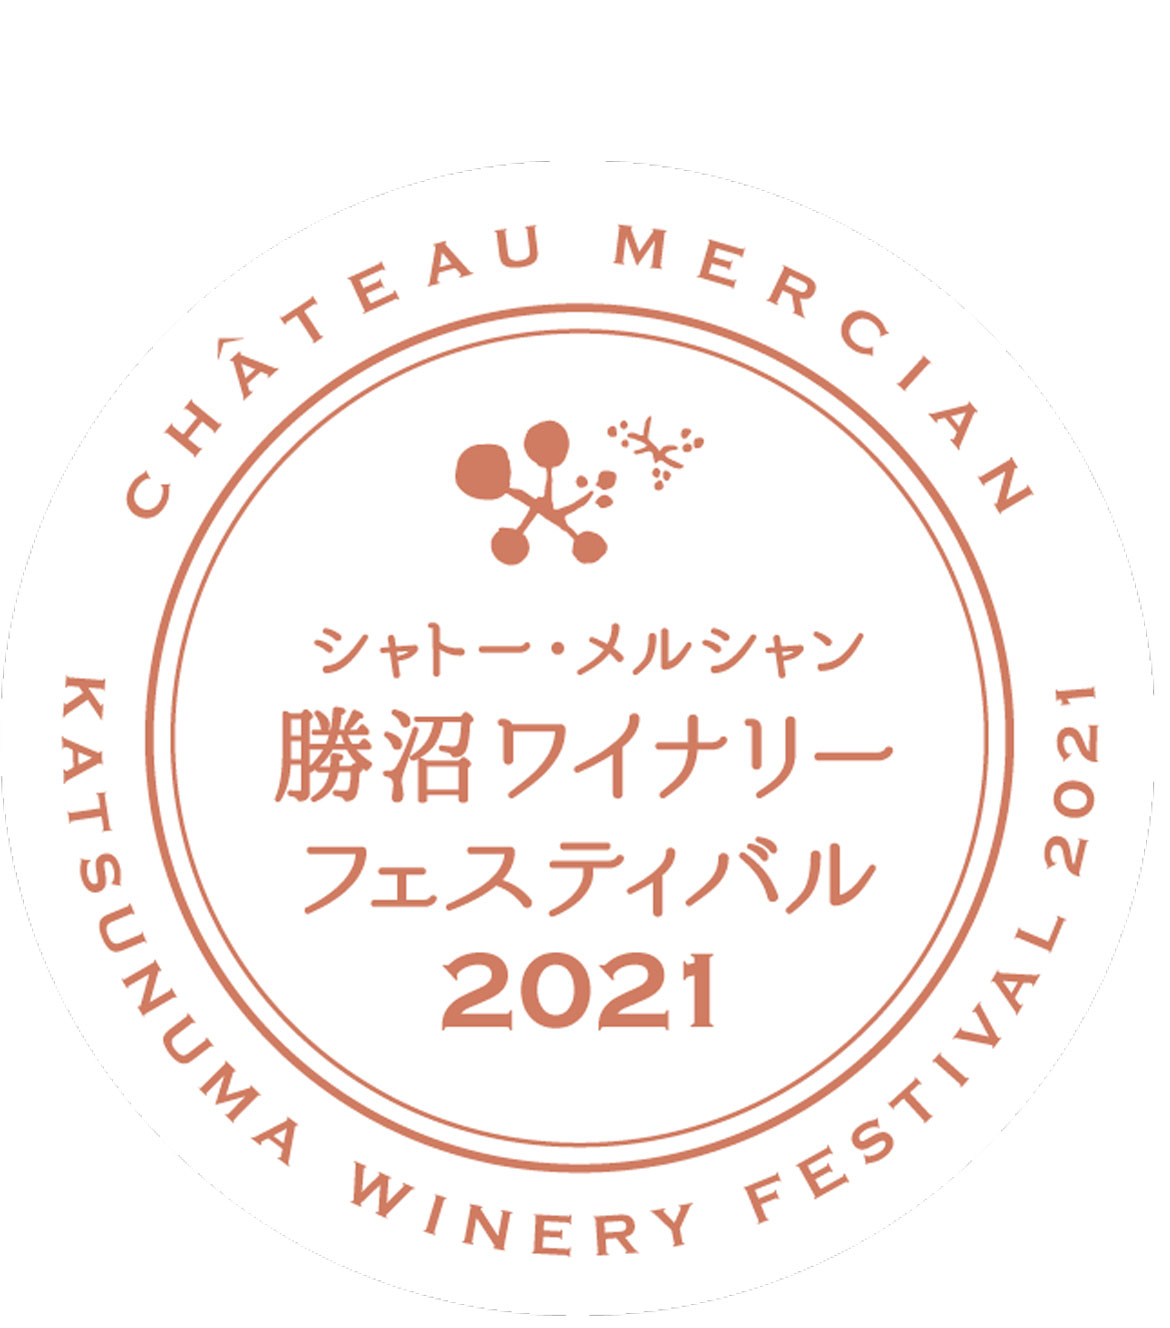 自宅からでも日本ワインを楽しめるオンラインイベント「シャトー・メルシャン 勝沼ワイナリーフェスティバル2021」開催